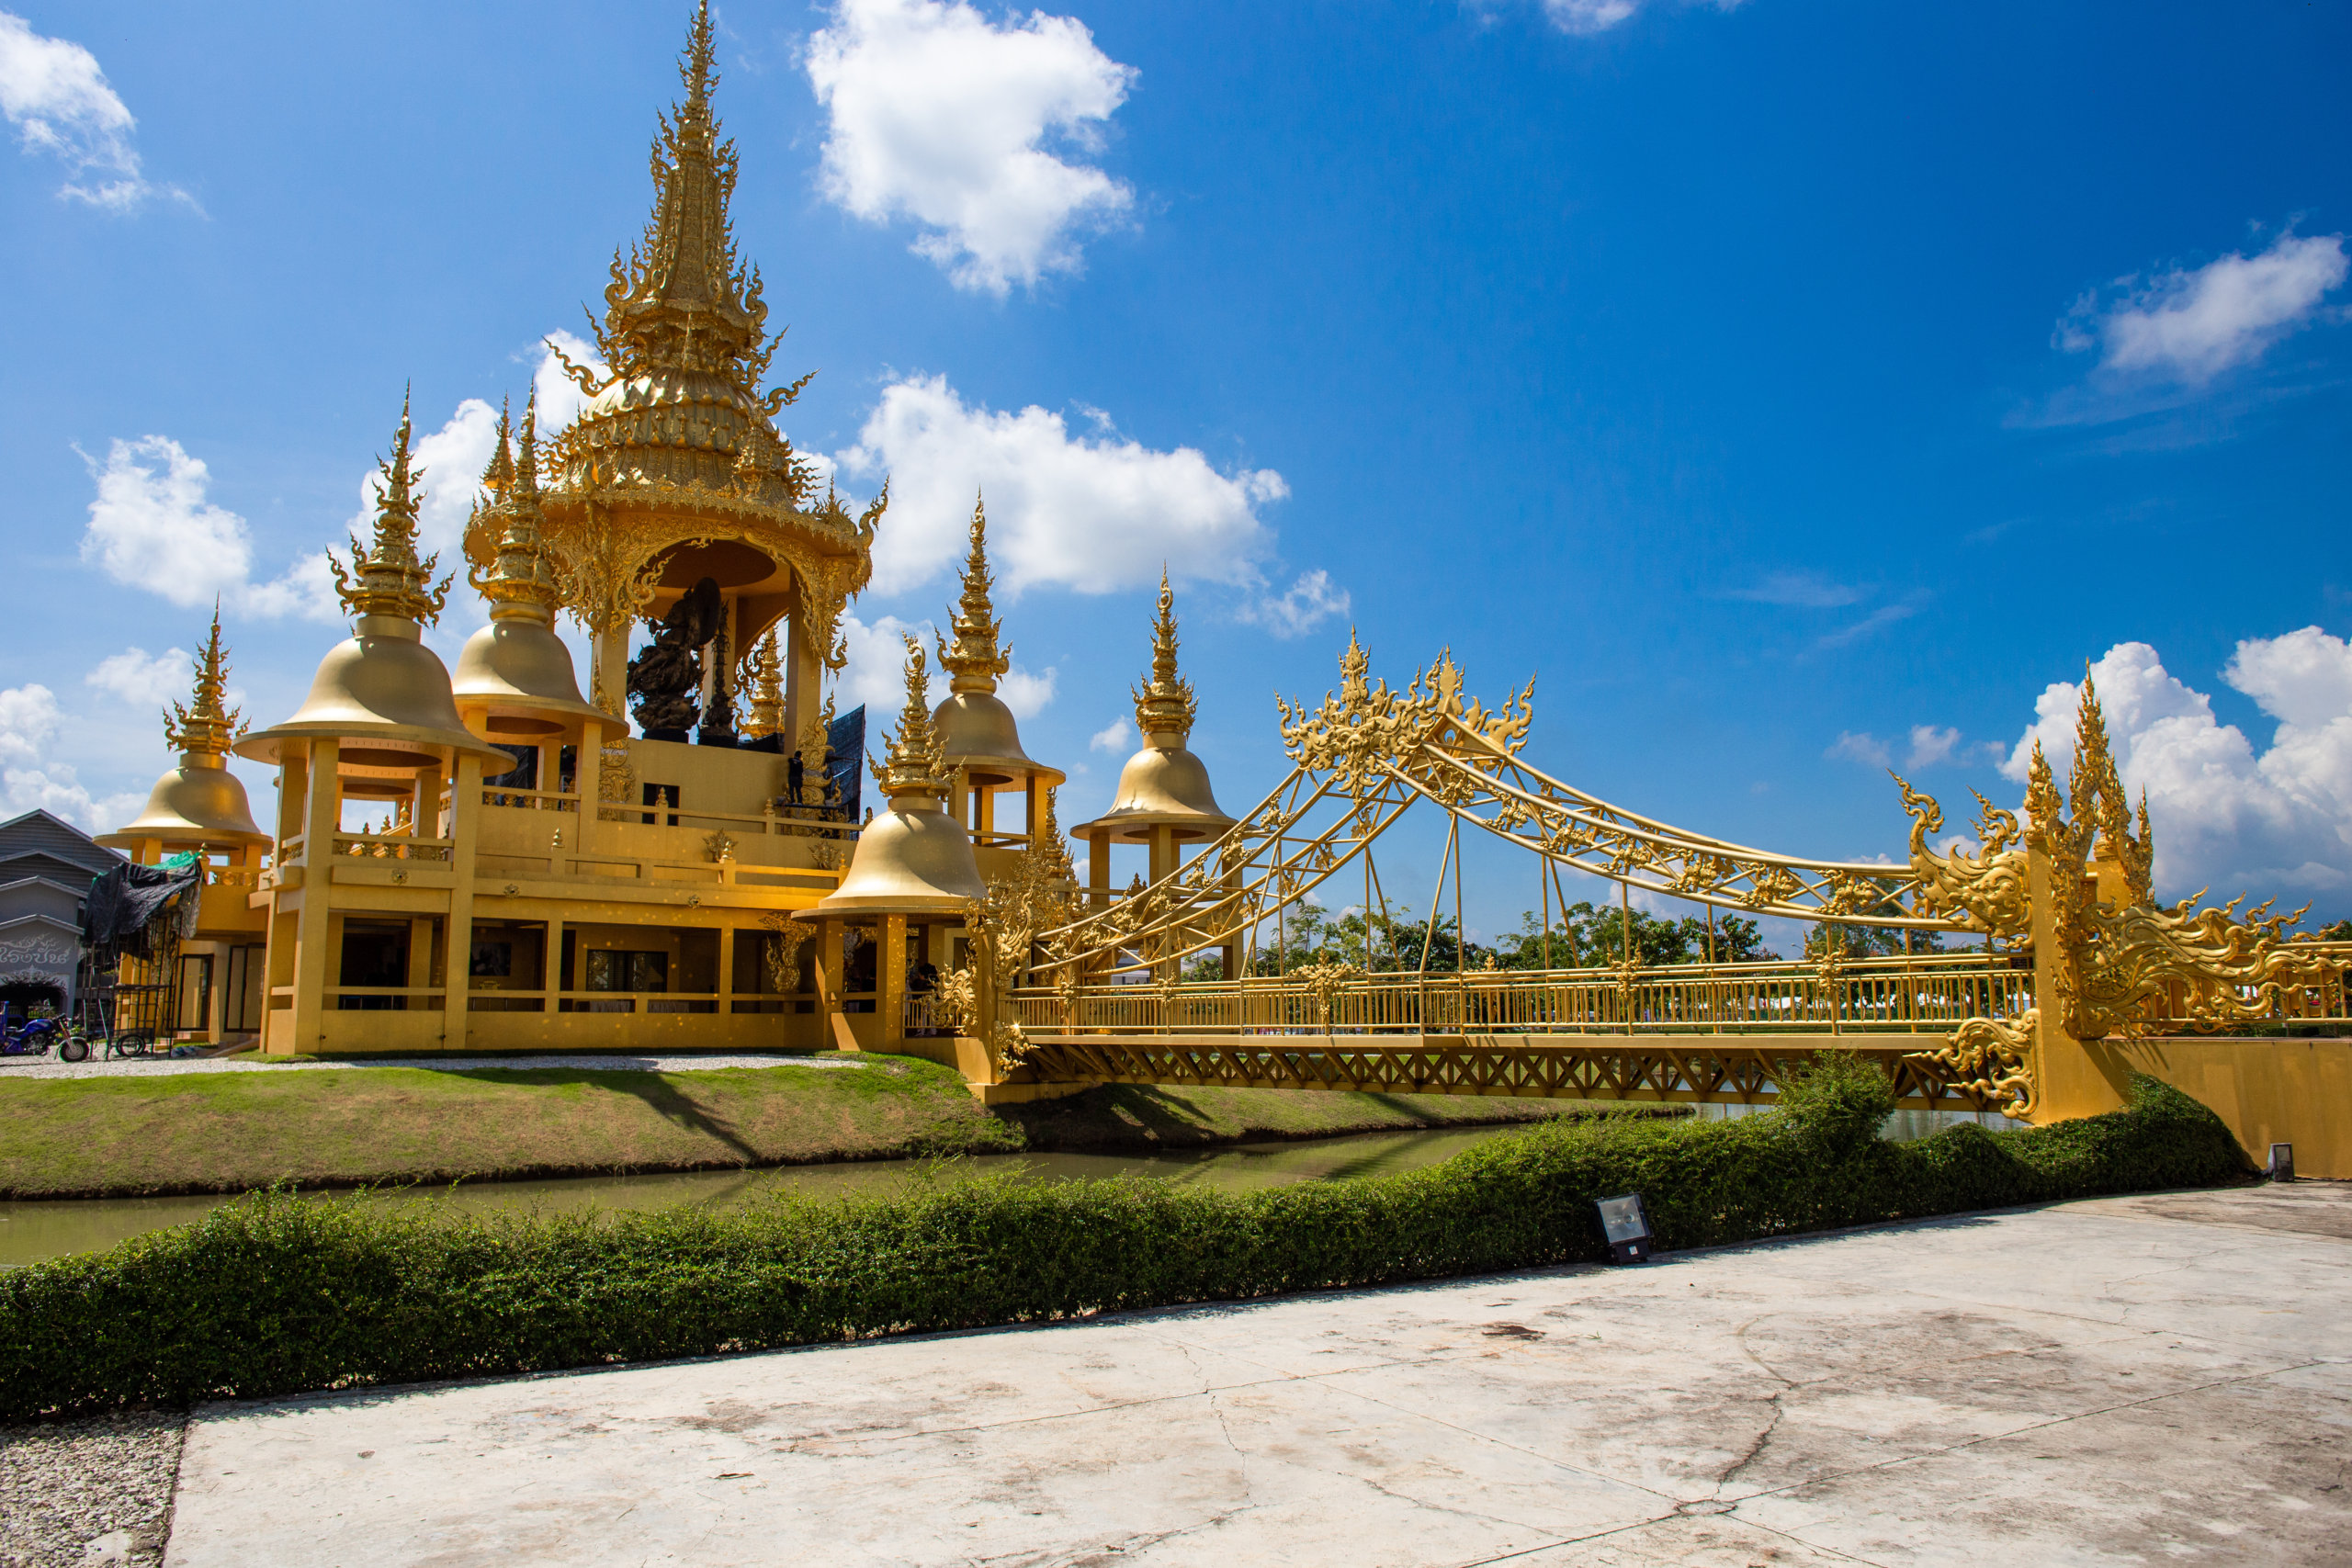 Ganesha Exhibition Hall in Wat Rong Khun, Chiang Rai